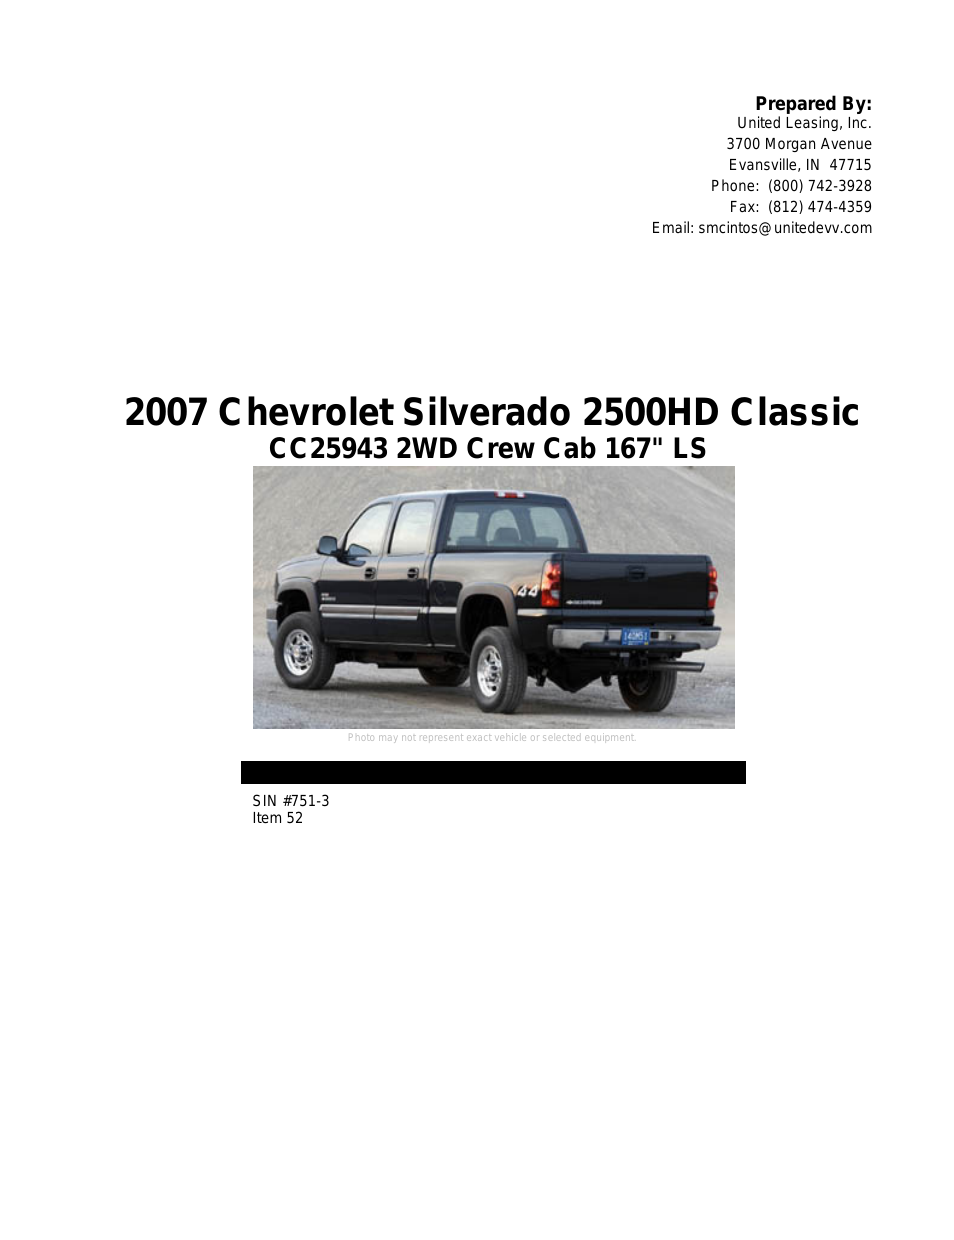 Silverado 2500HD Classic